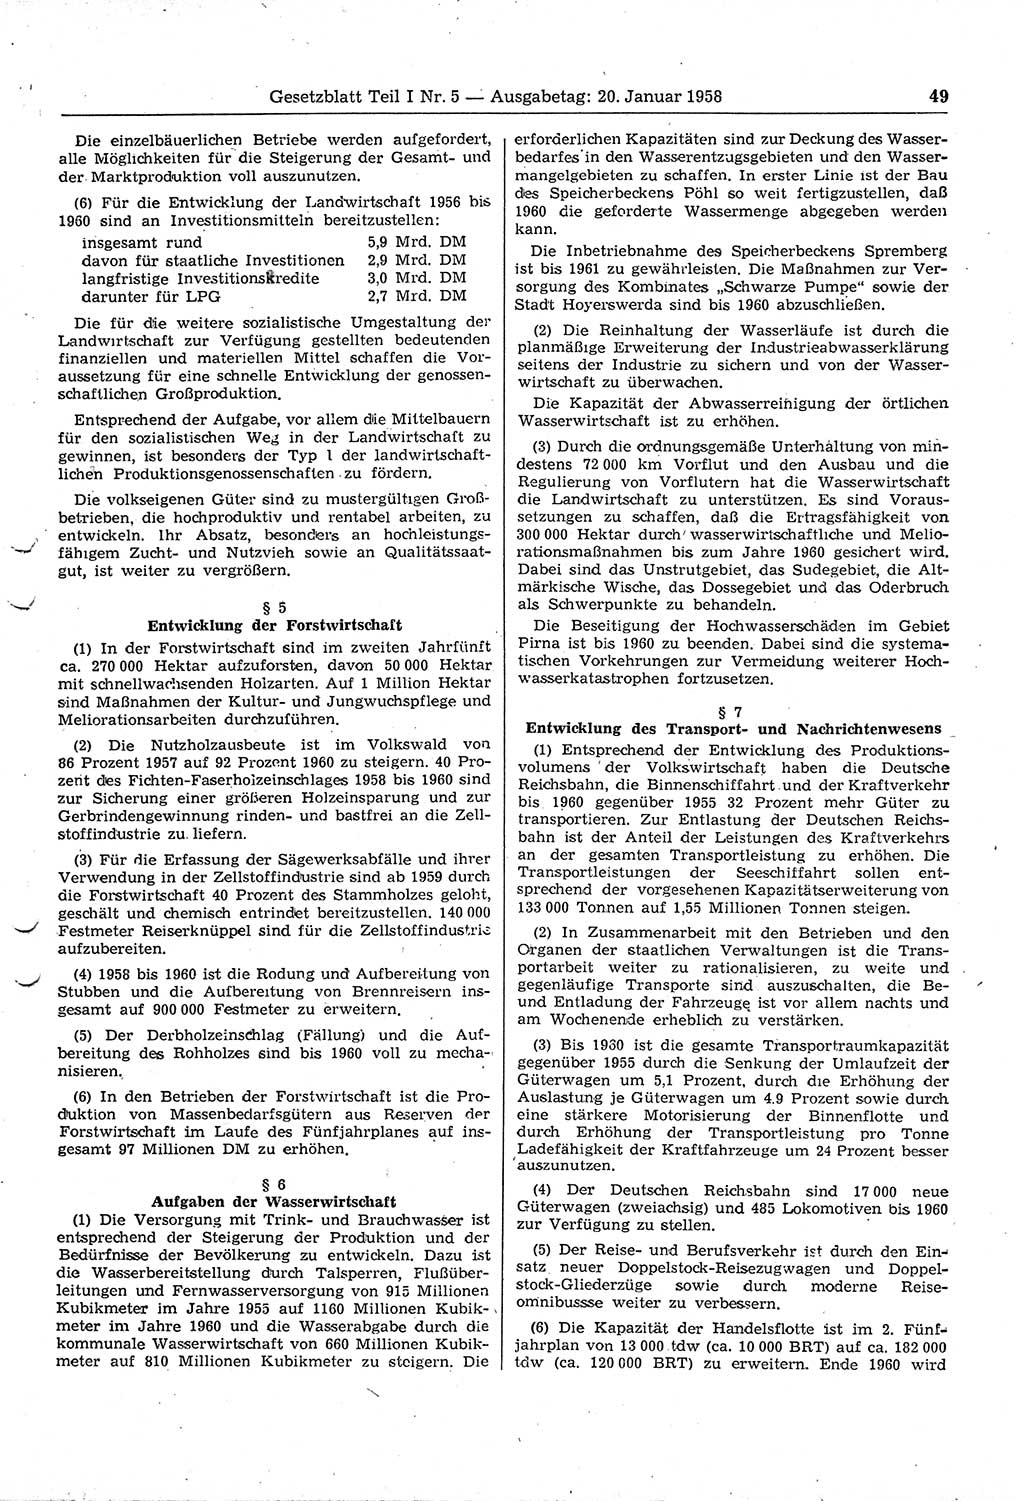 Gesetzblatt (GBl.) der Deutschen Demokratischen Republik (DDR) Teil Ⅰ 1958, Seite 49 (GBl. DDR Ⅰ 1958, S. 49)